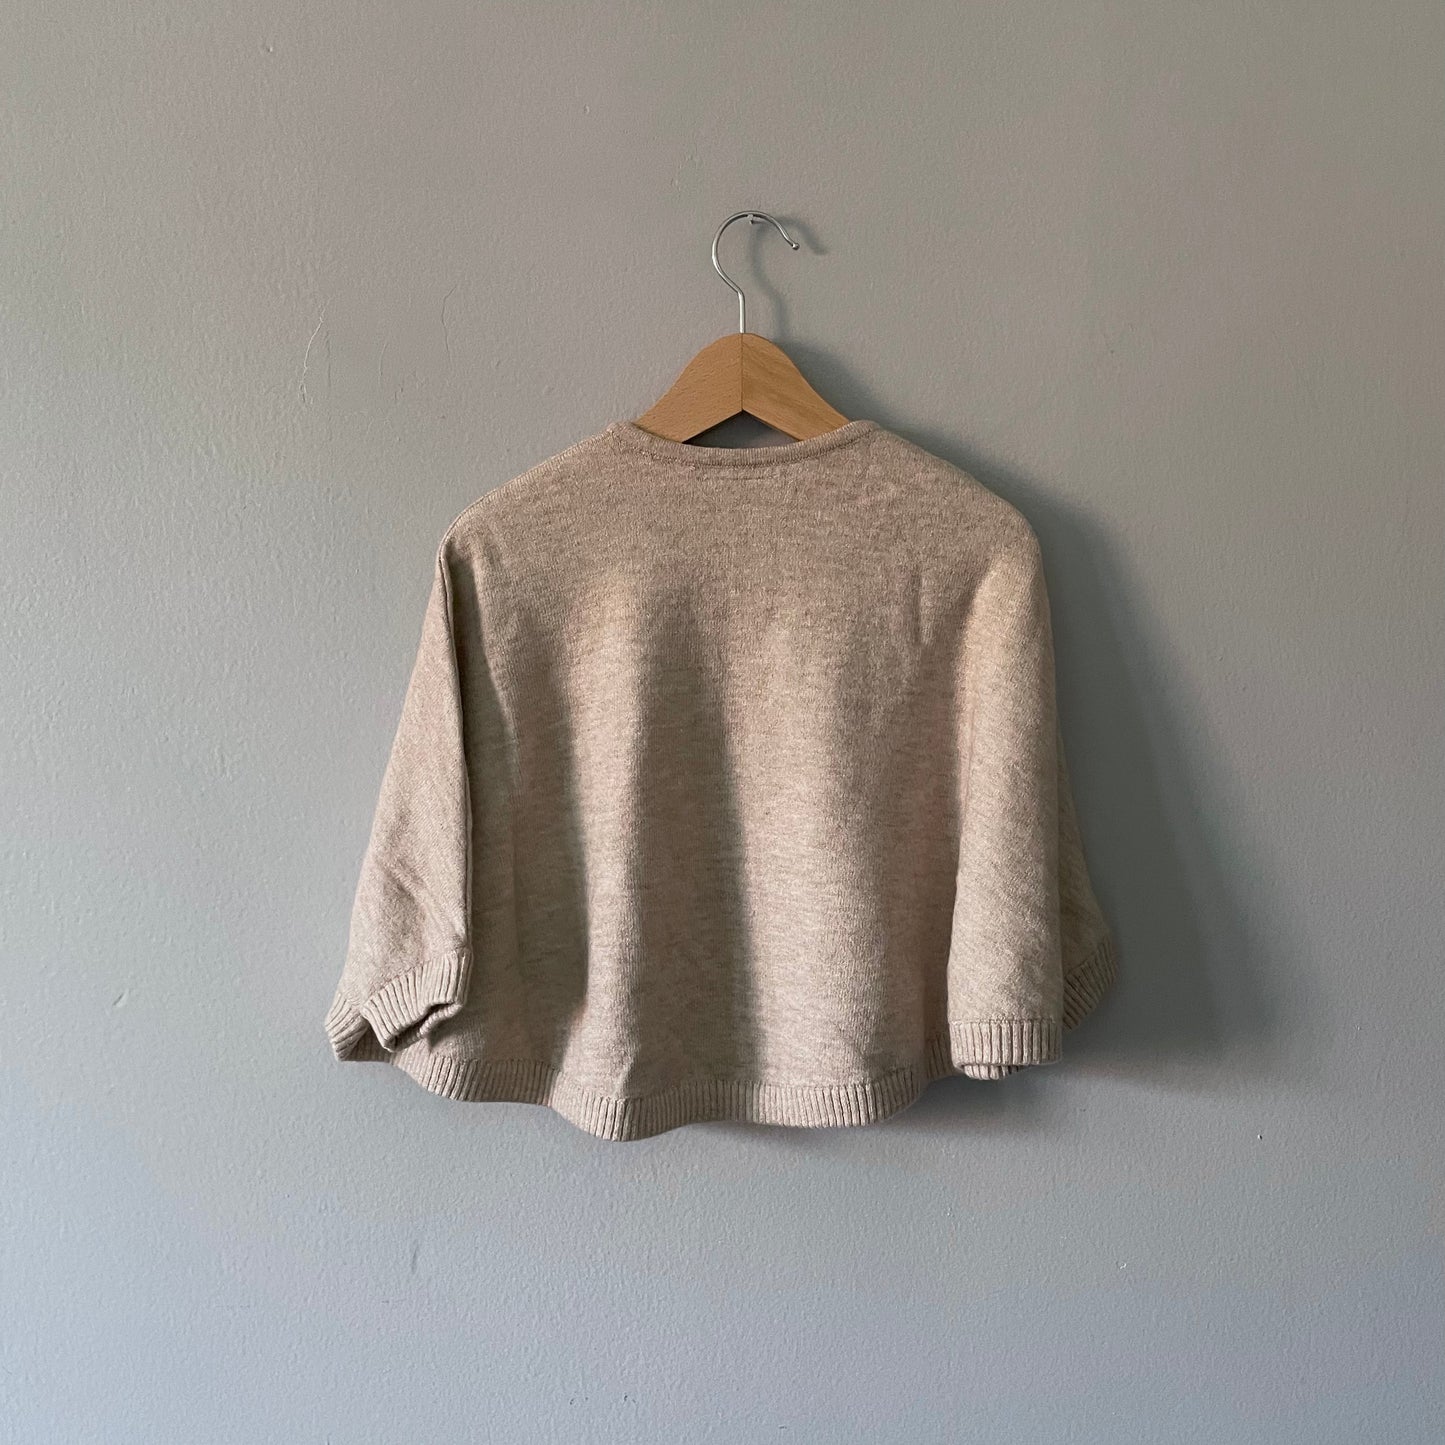 Zara / Beige knit poncho / 12-18M